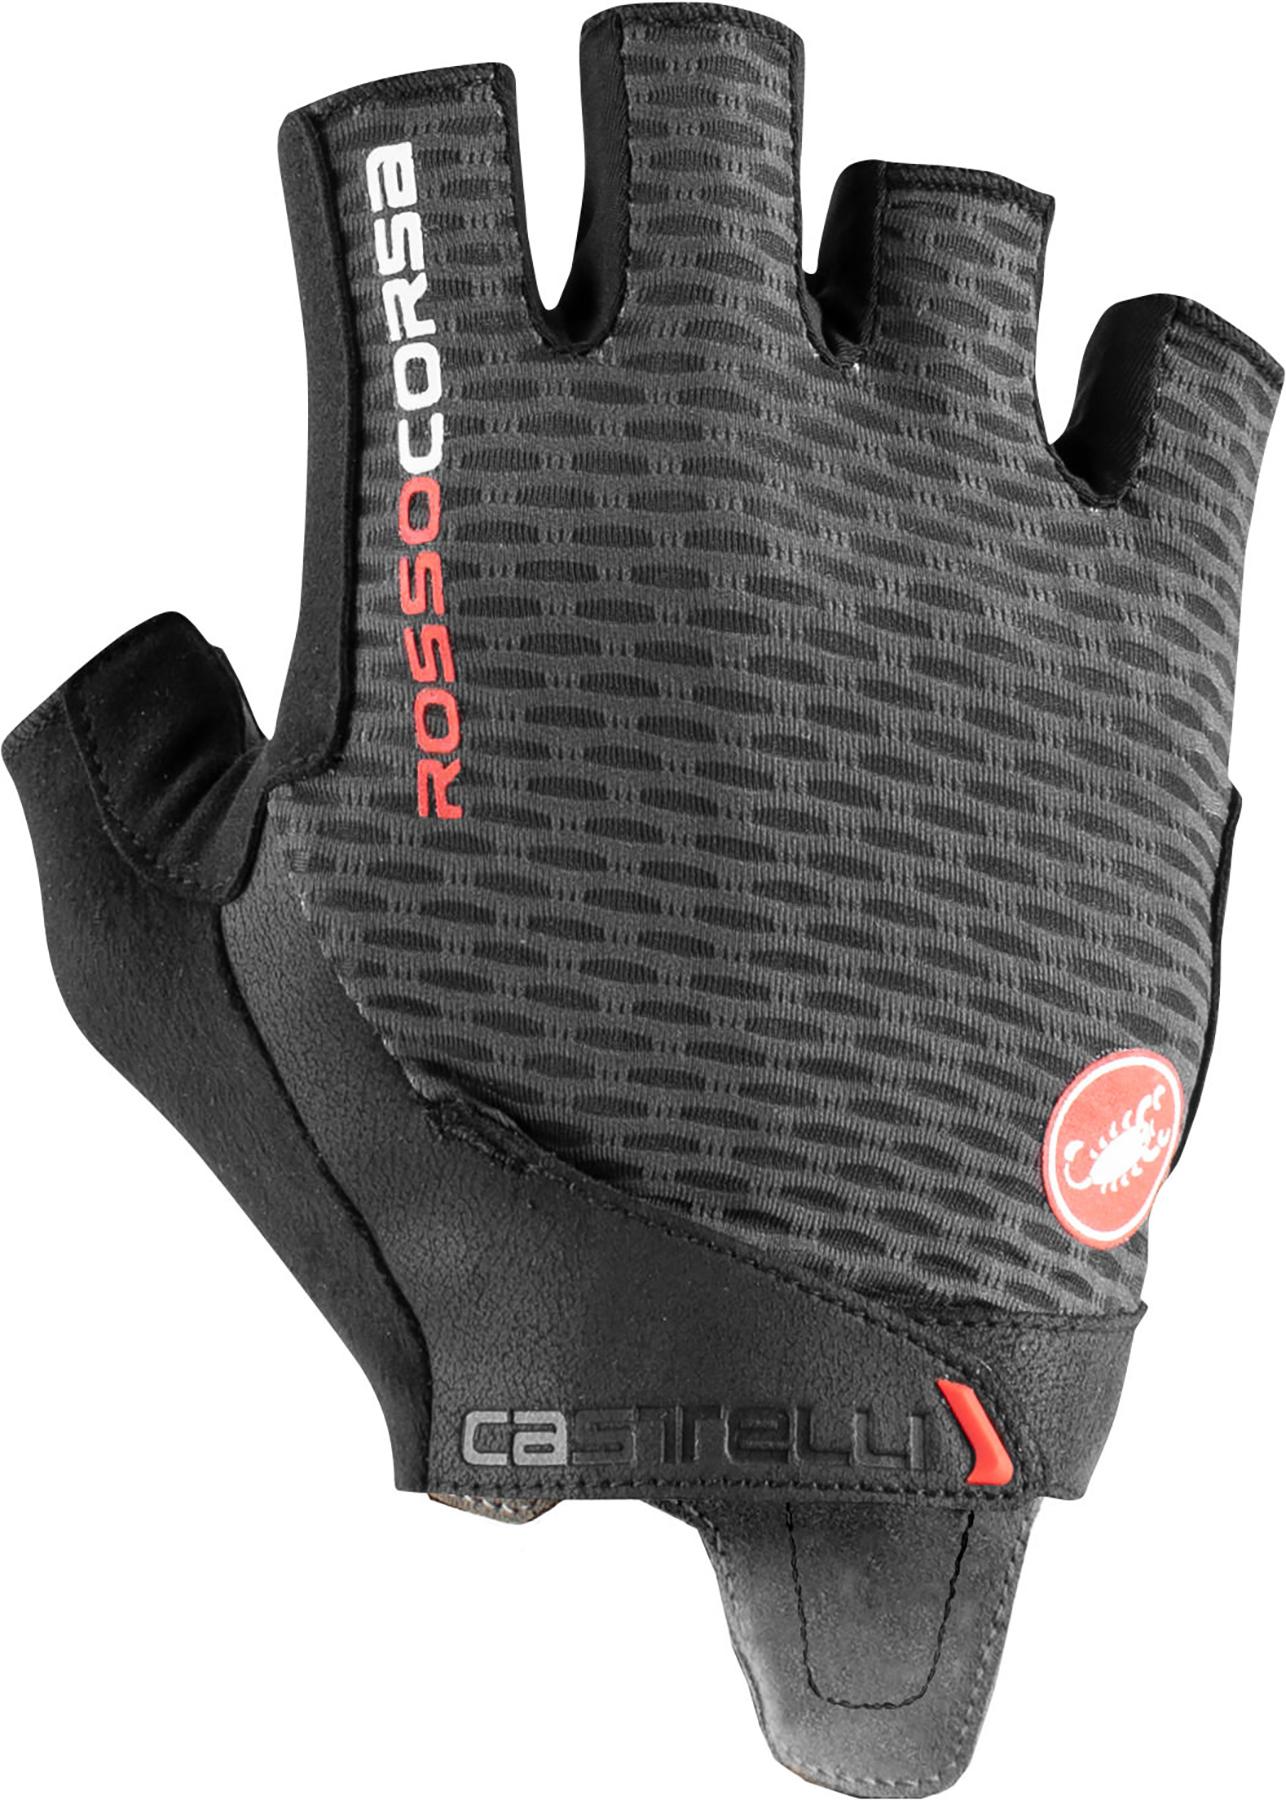 Castelli Rosso Corsa Pro V Cycling Gloves - Dark Grey